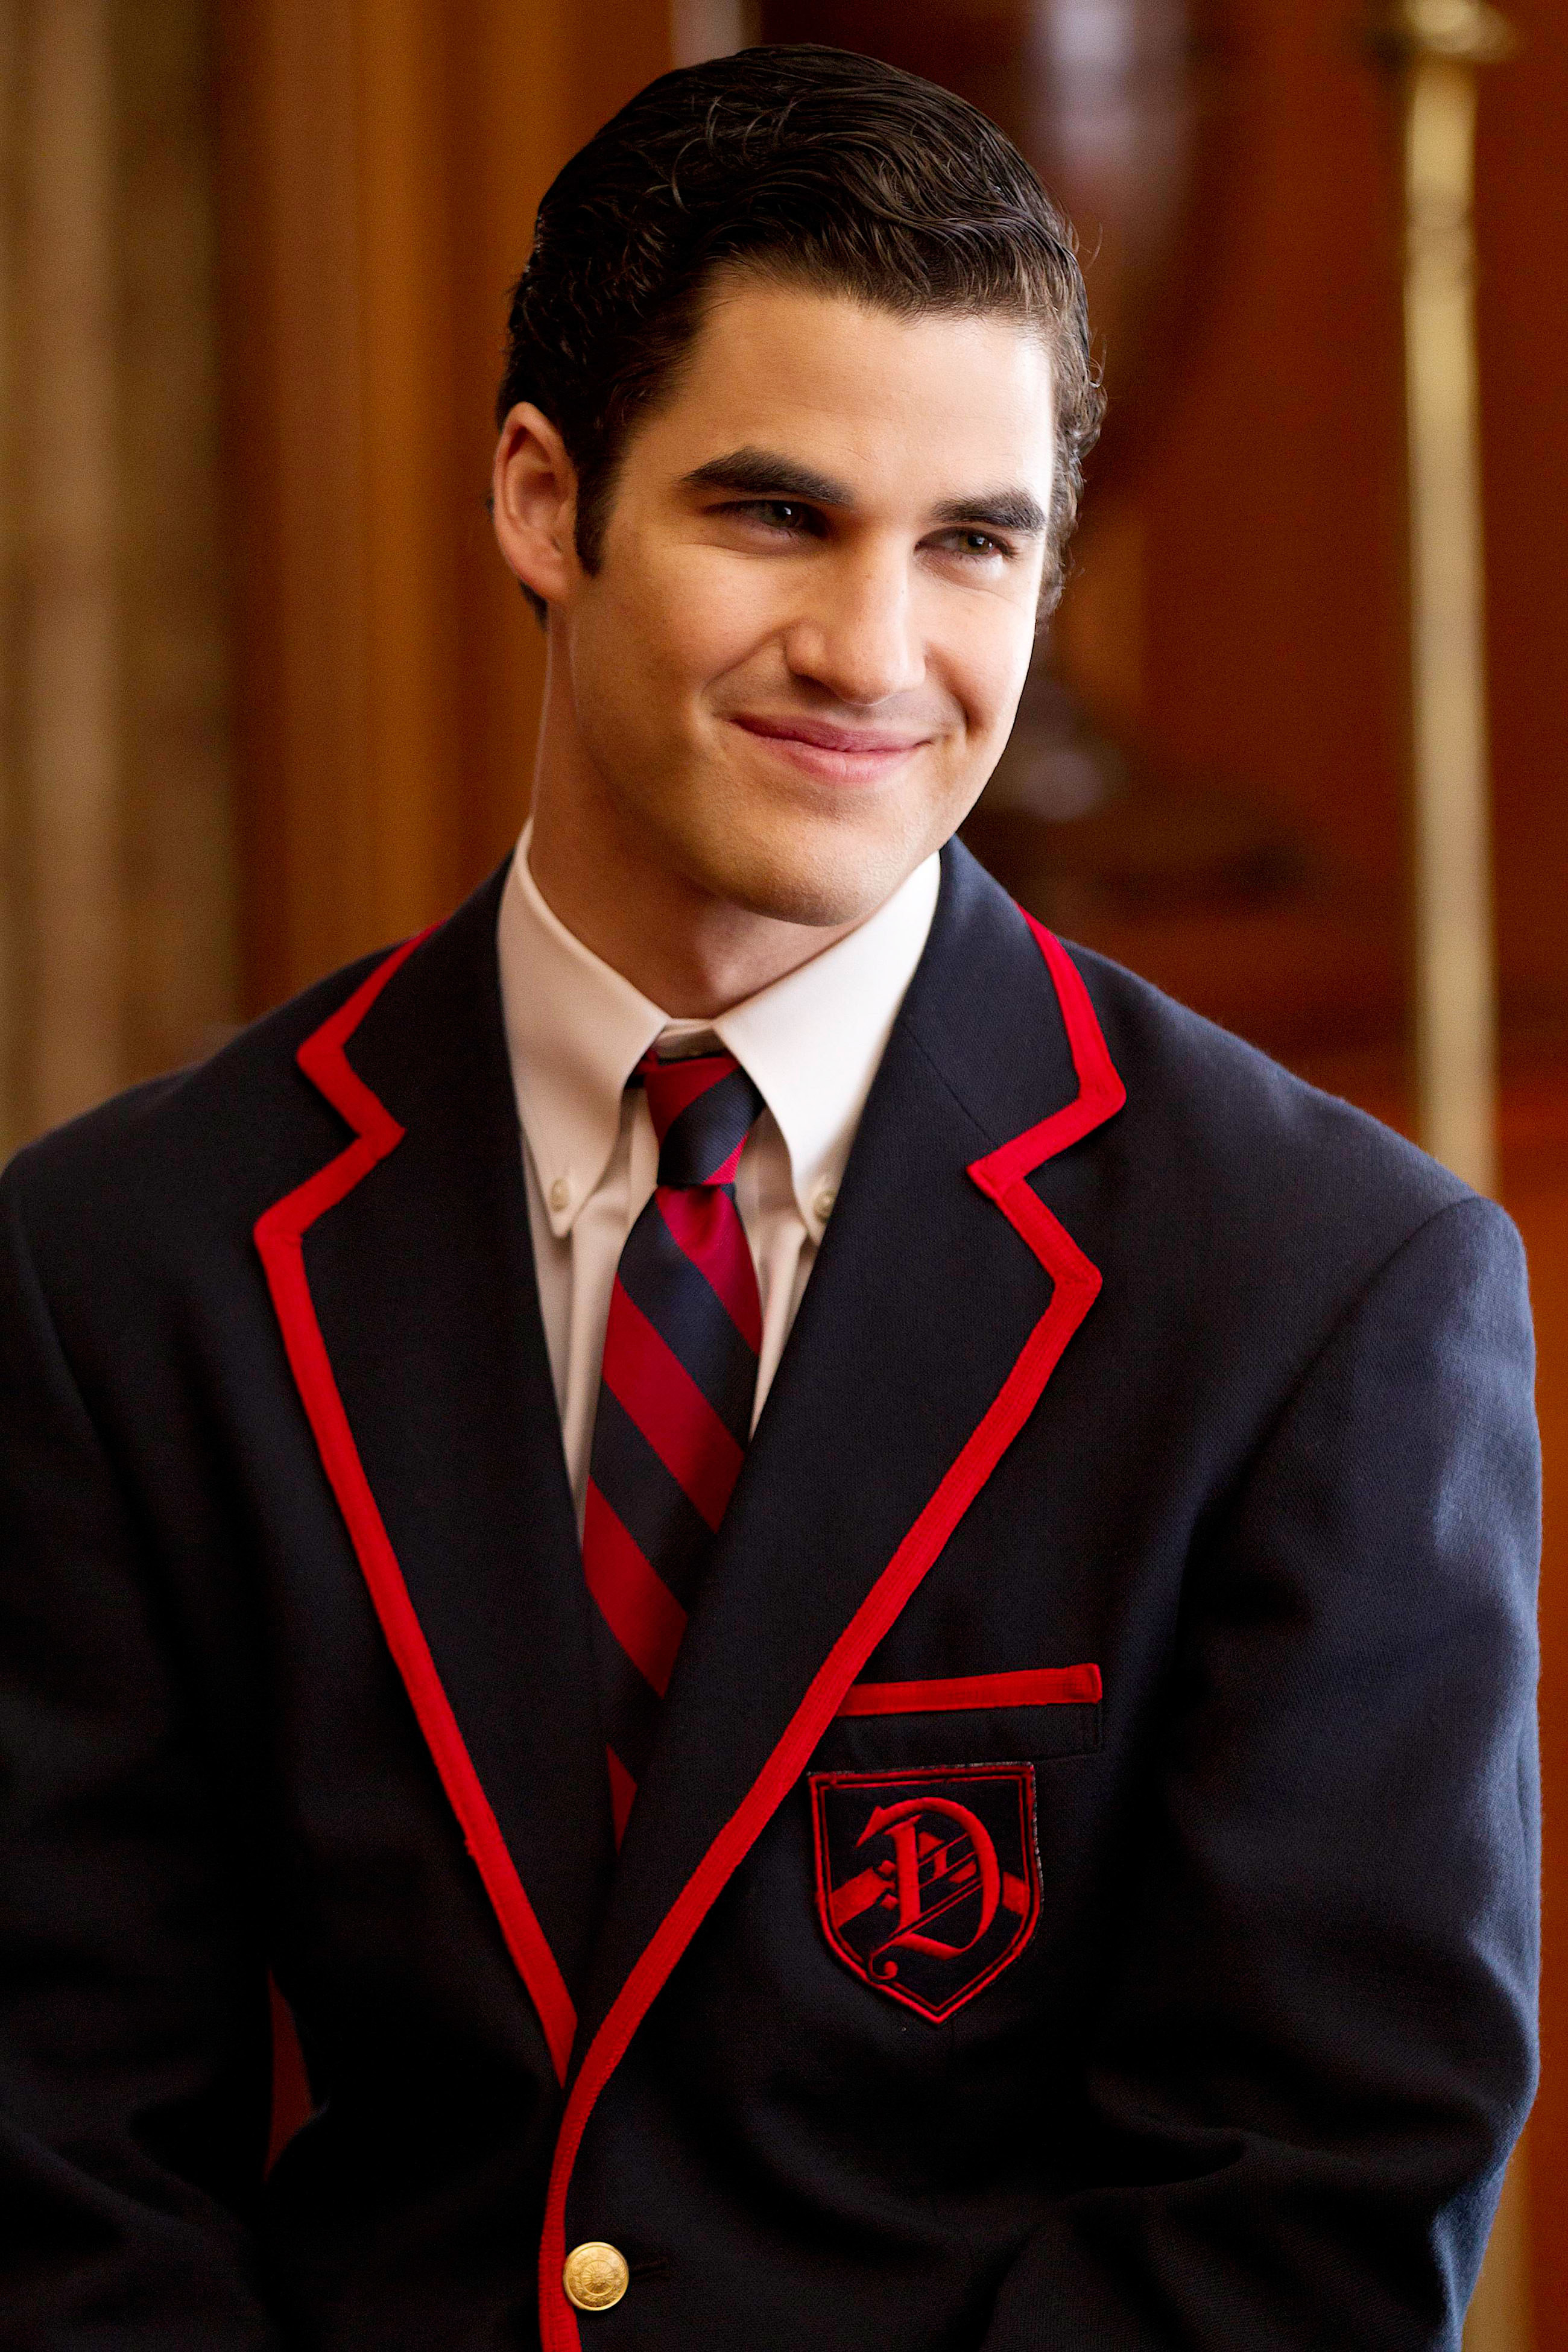 Darren as Blaine